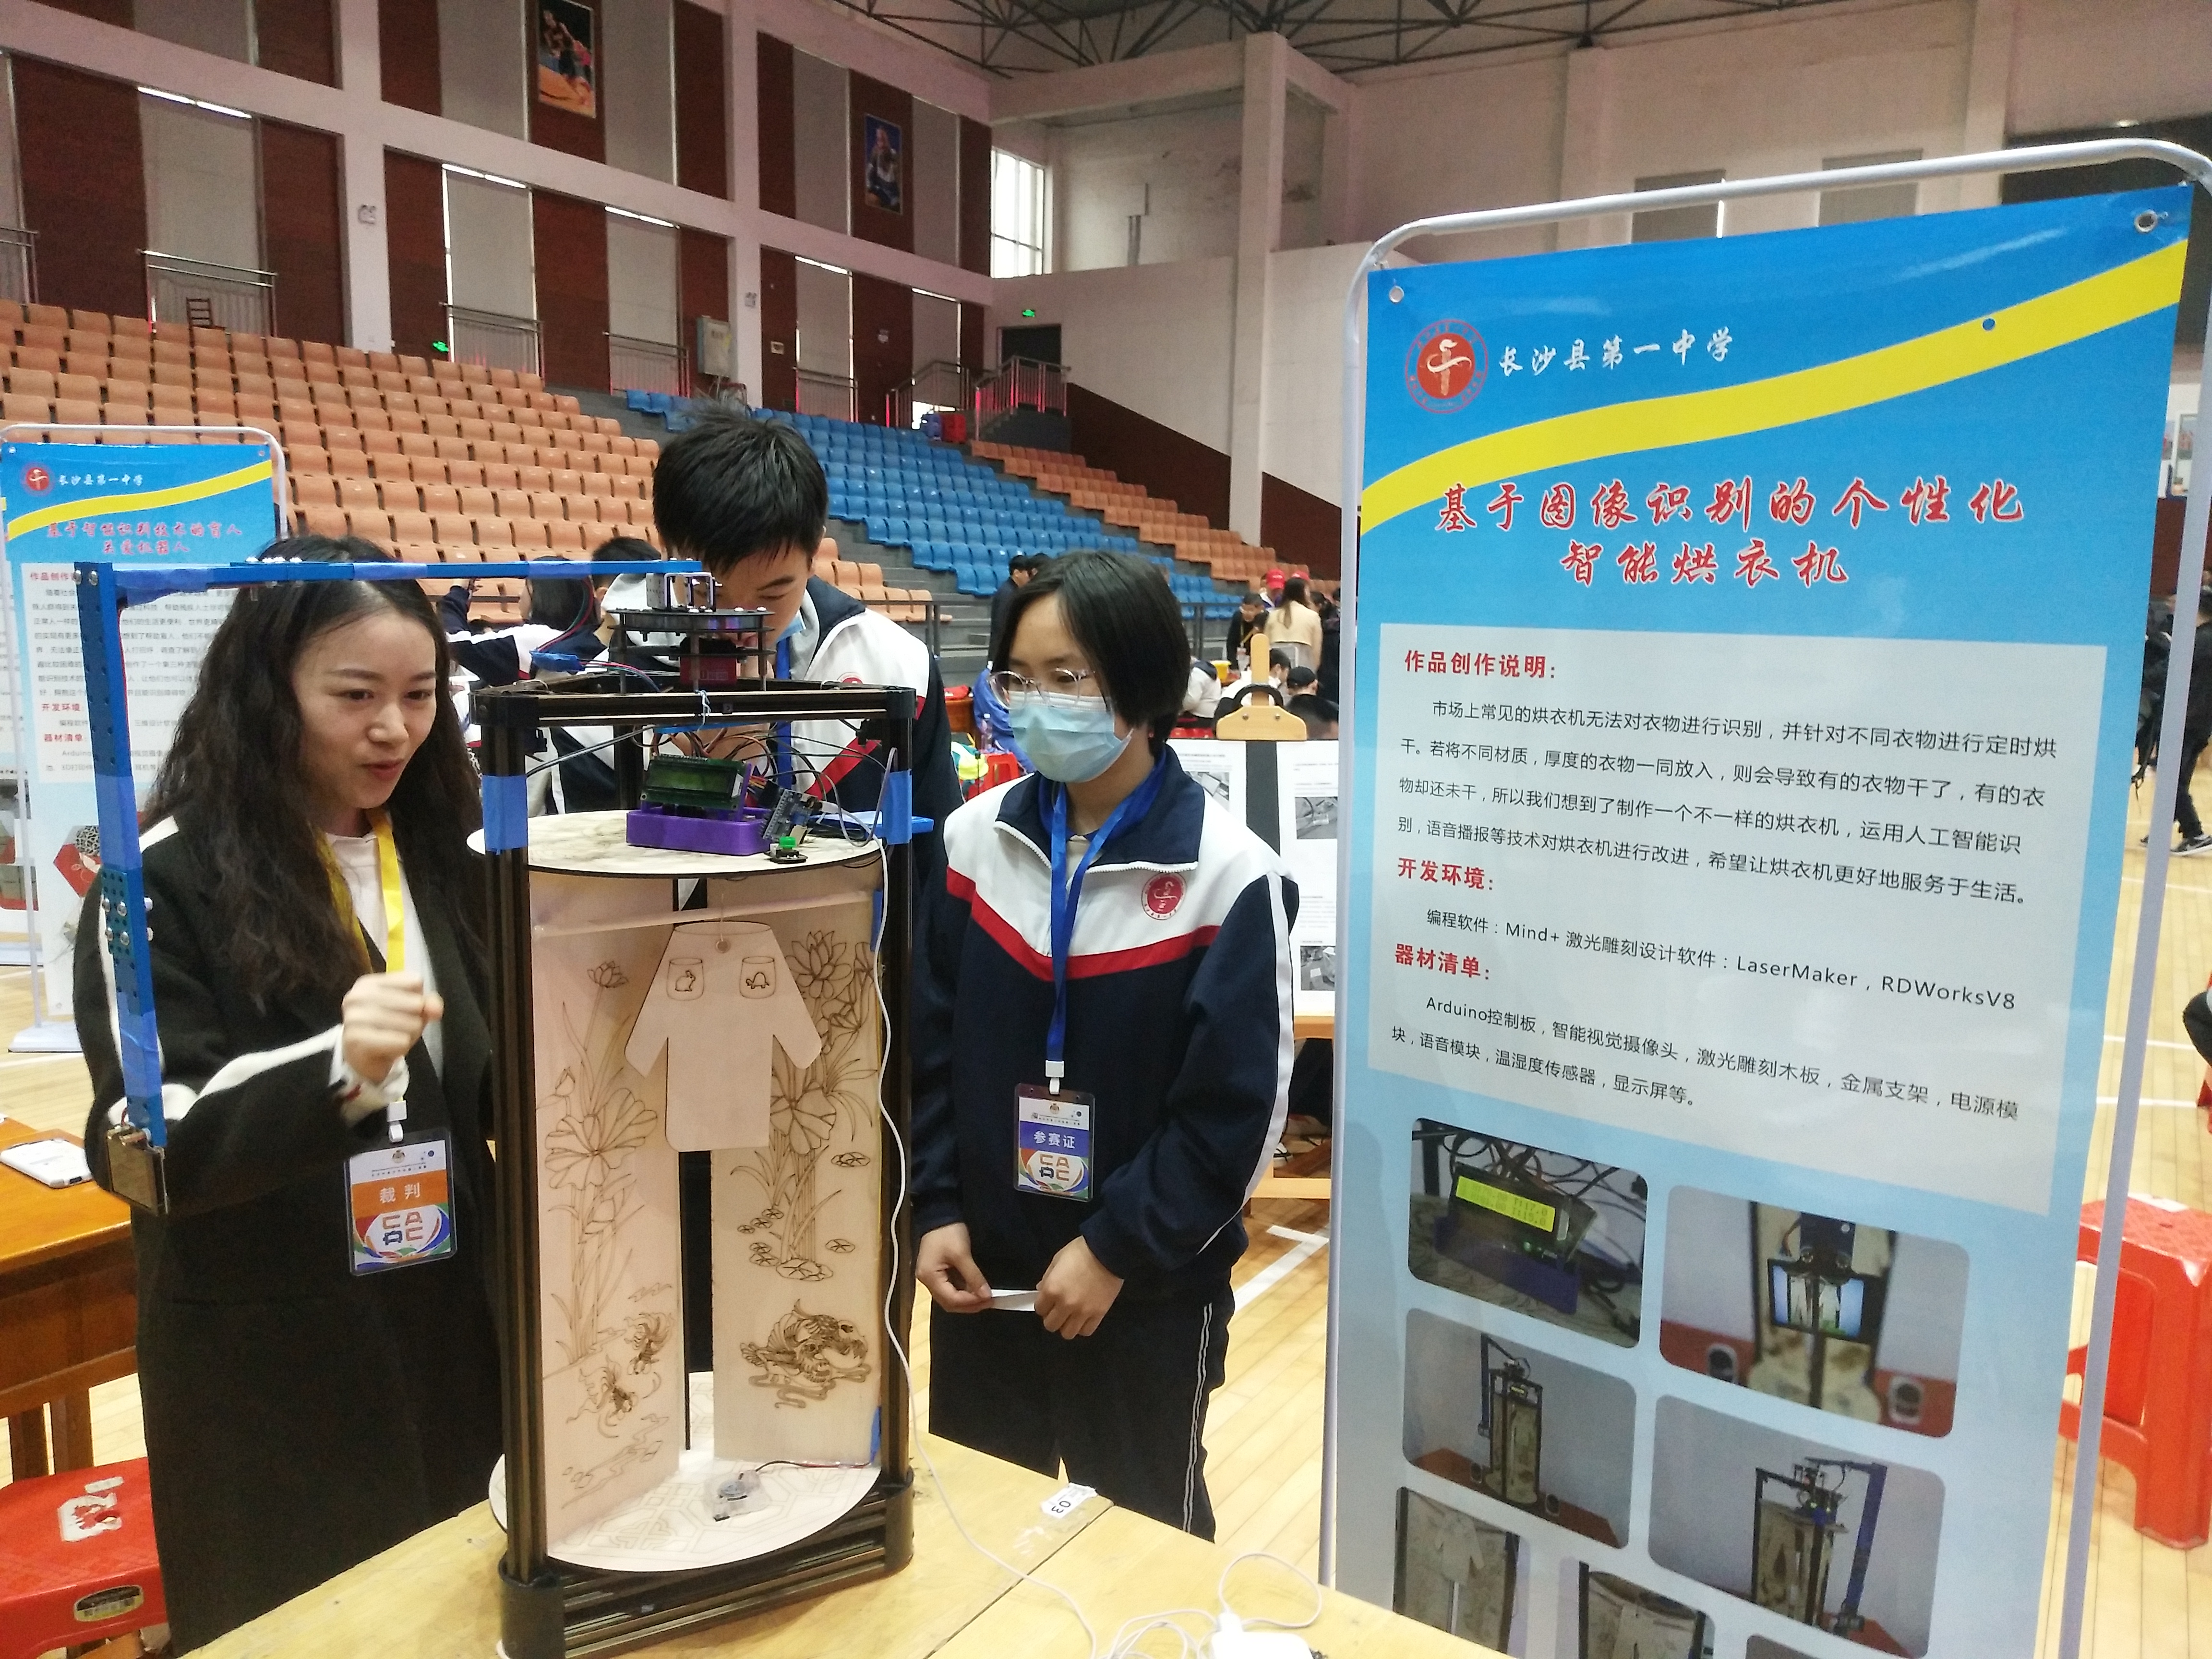 长沙县第一中学高一学生谢智慧和同学制作的智能烘衣机，可以将不同厚度不同材质的衣服进行分区烘干，既安全又节能。